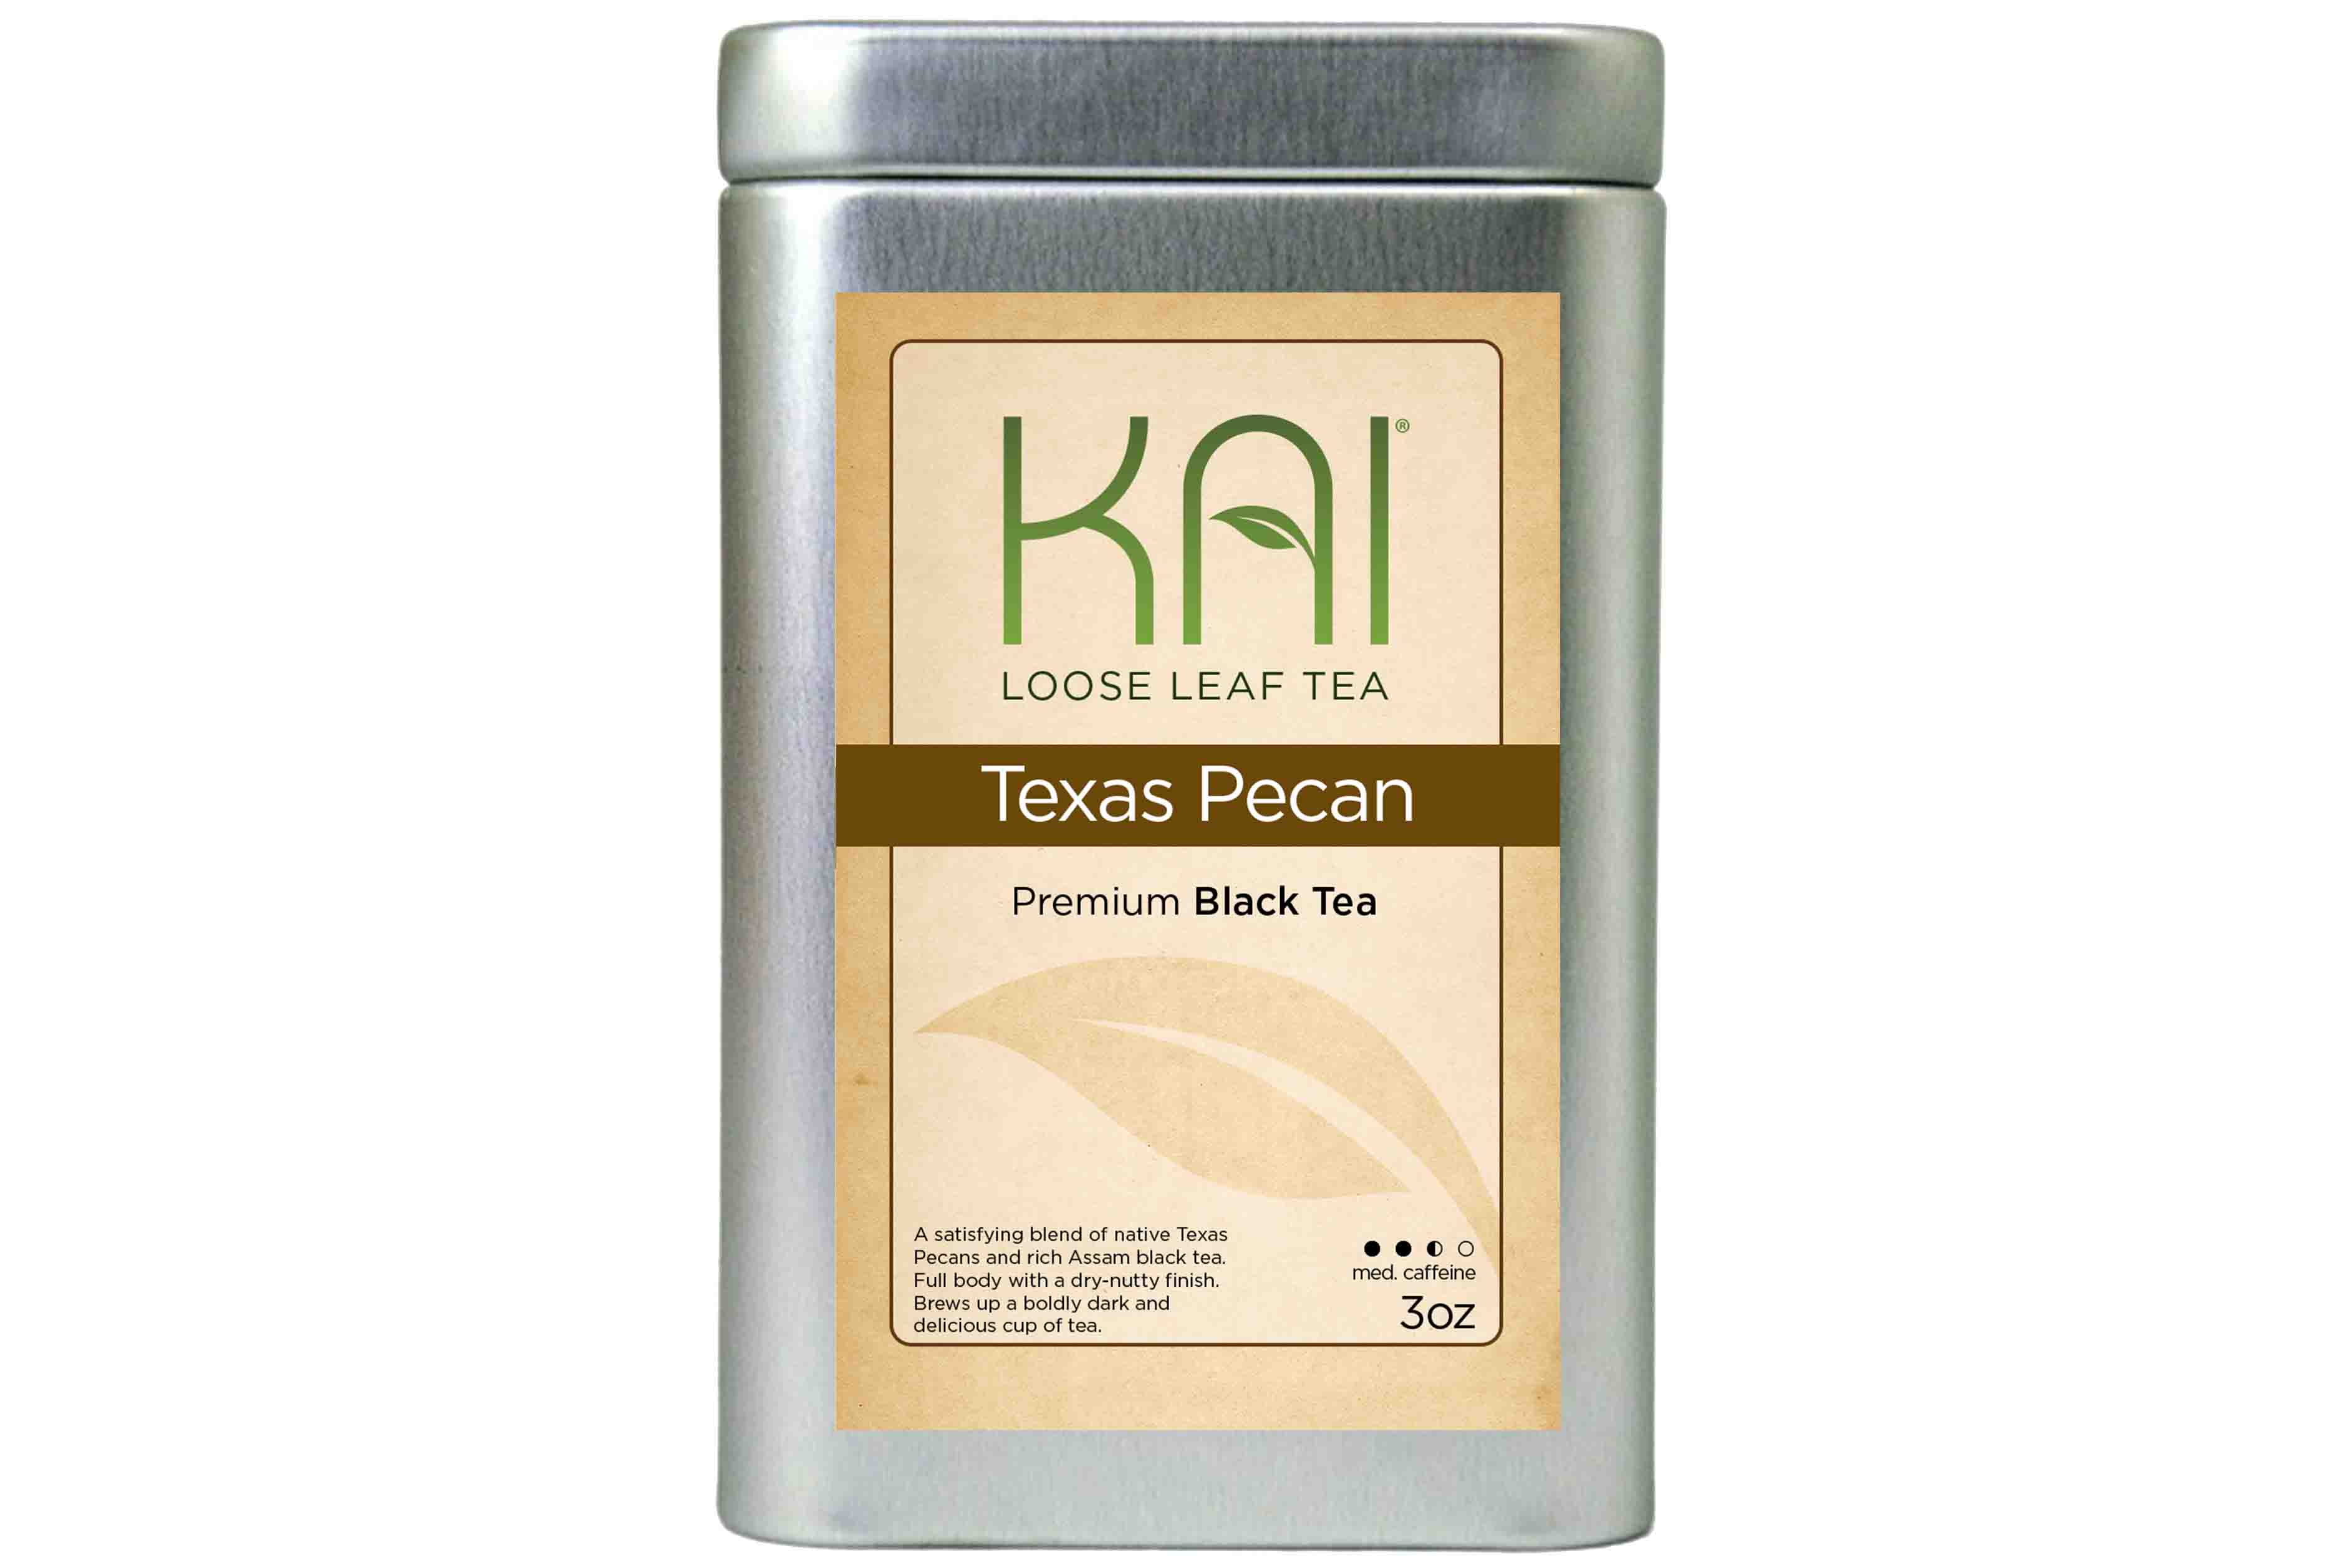 Kai Loose Leaf Tea - Texas Pecan